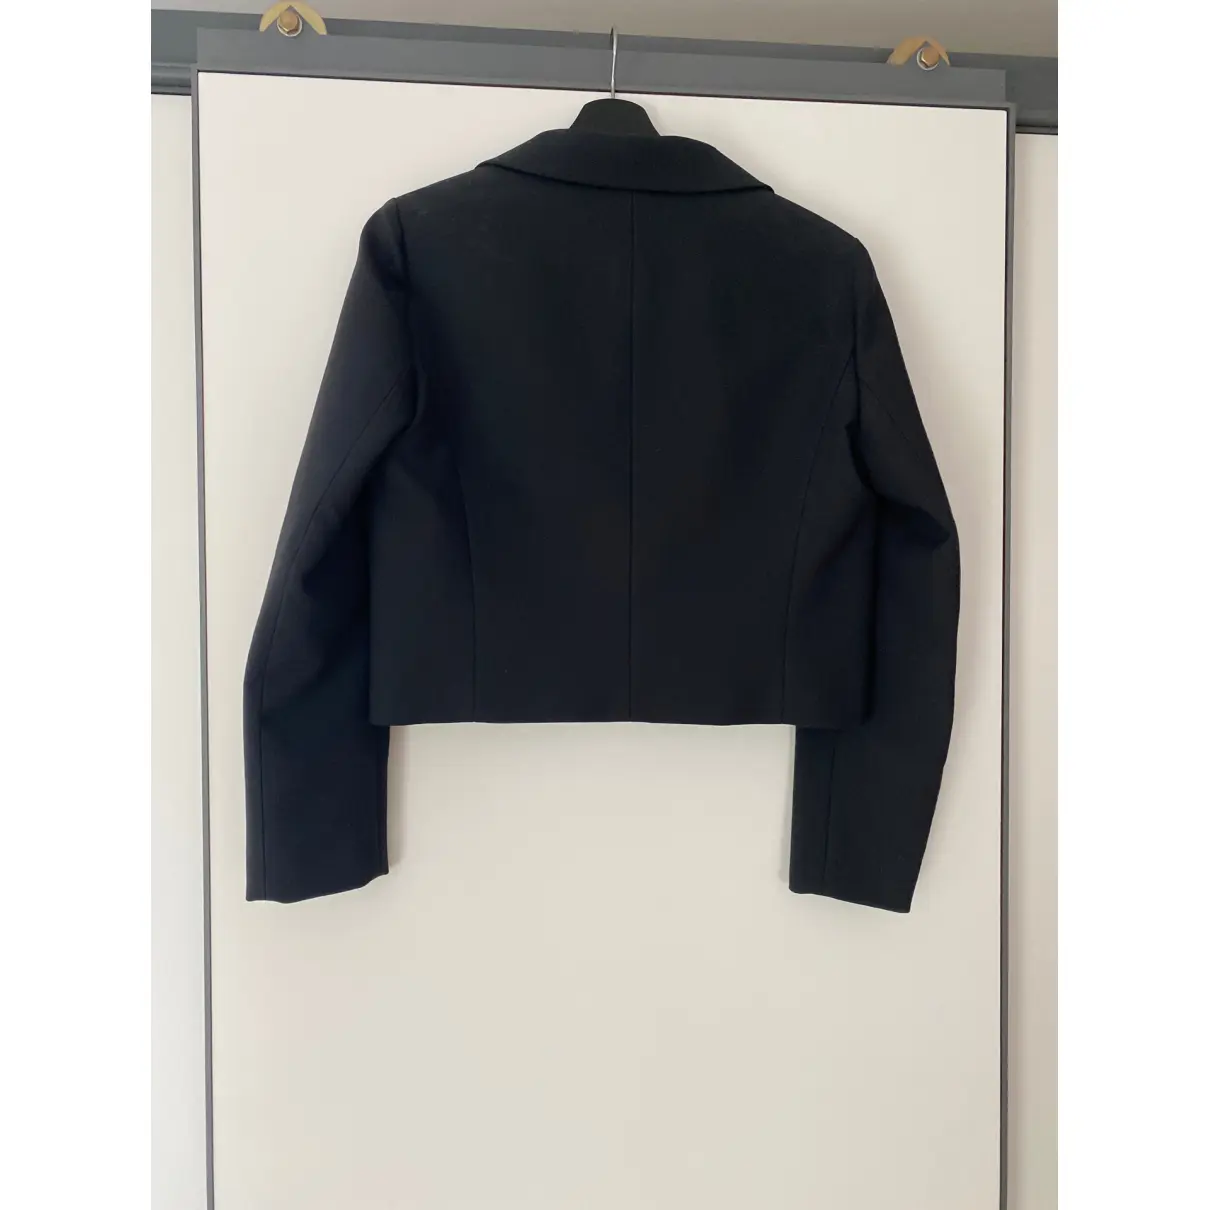 Buy Giamba Suit jacket online